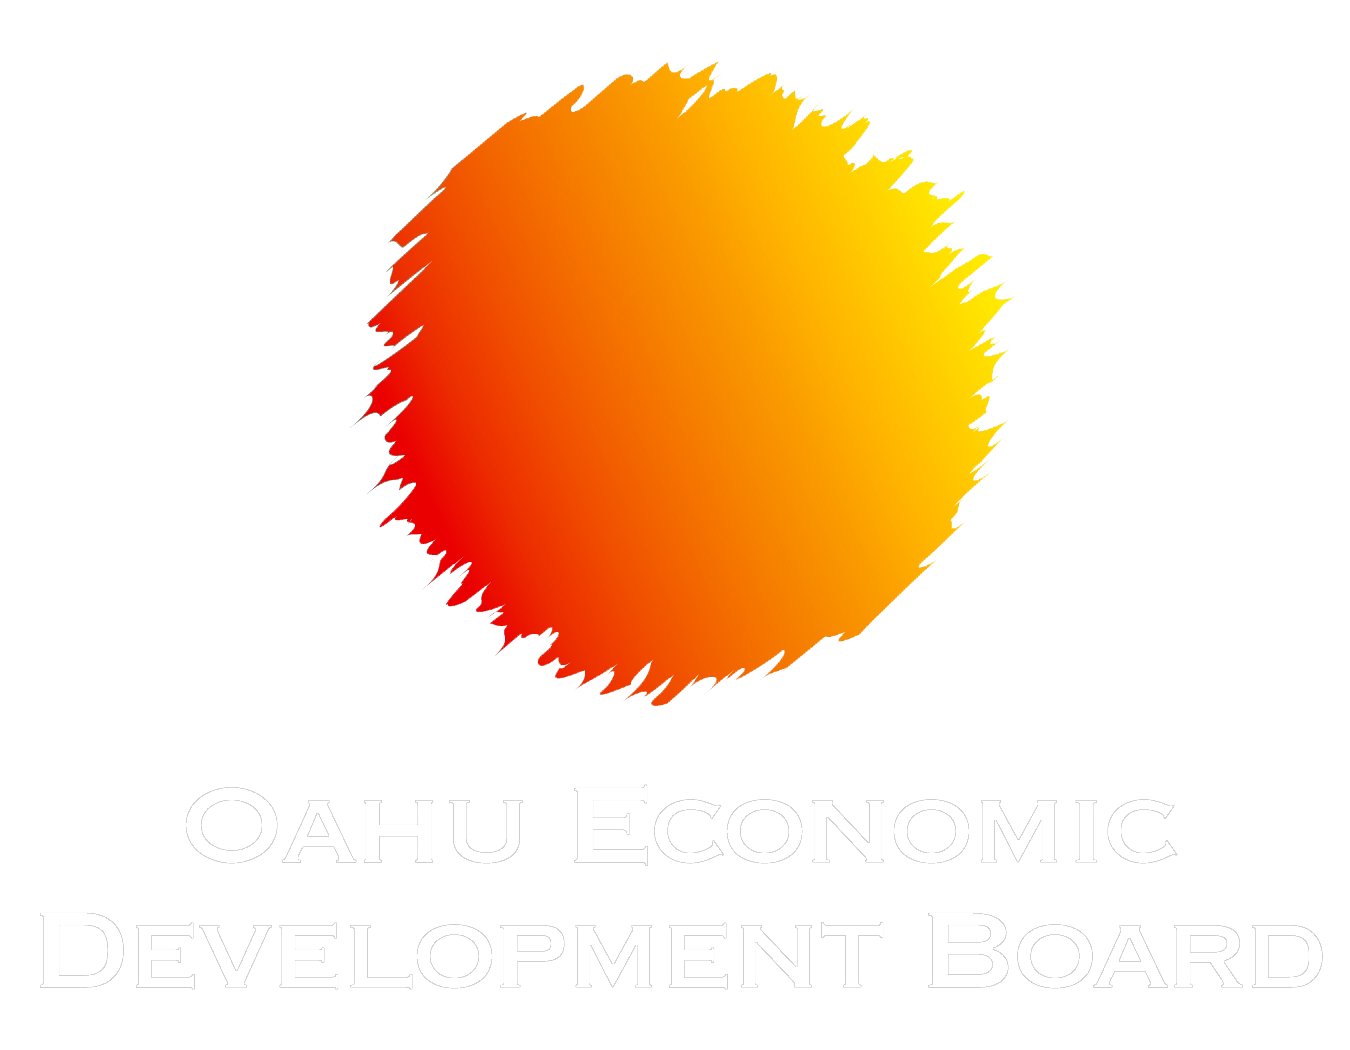 Oahu Economic Development Board